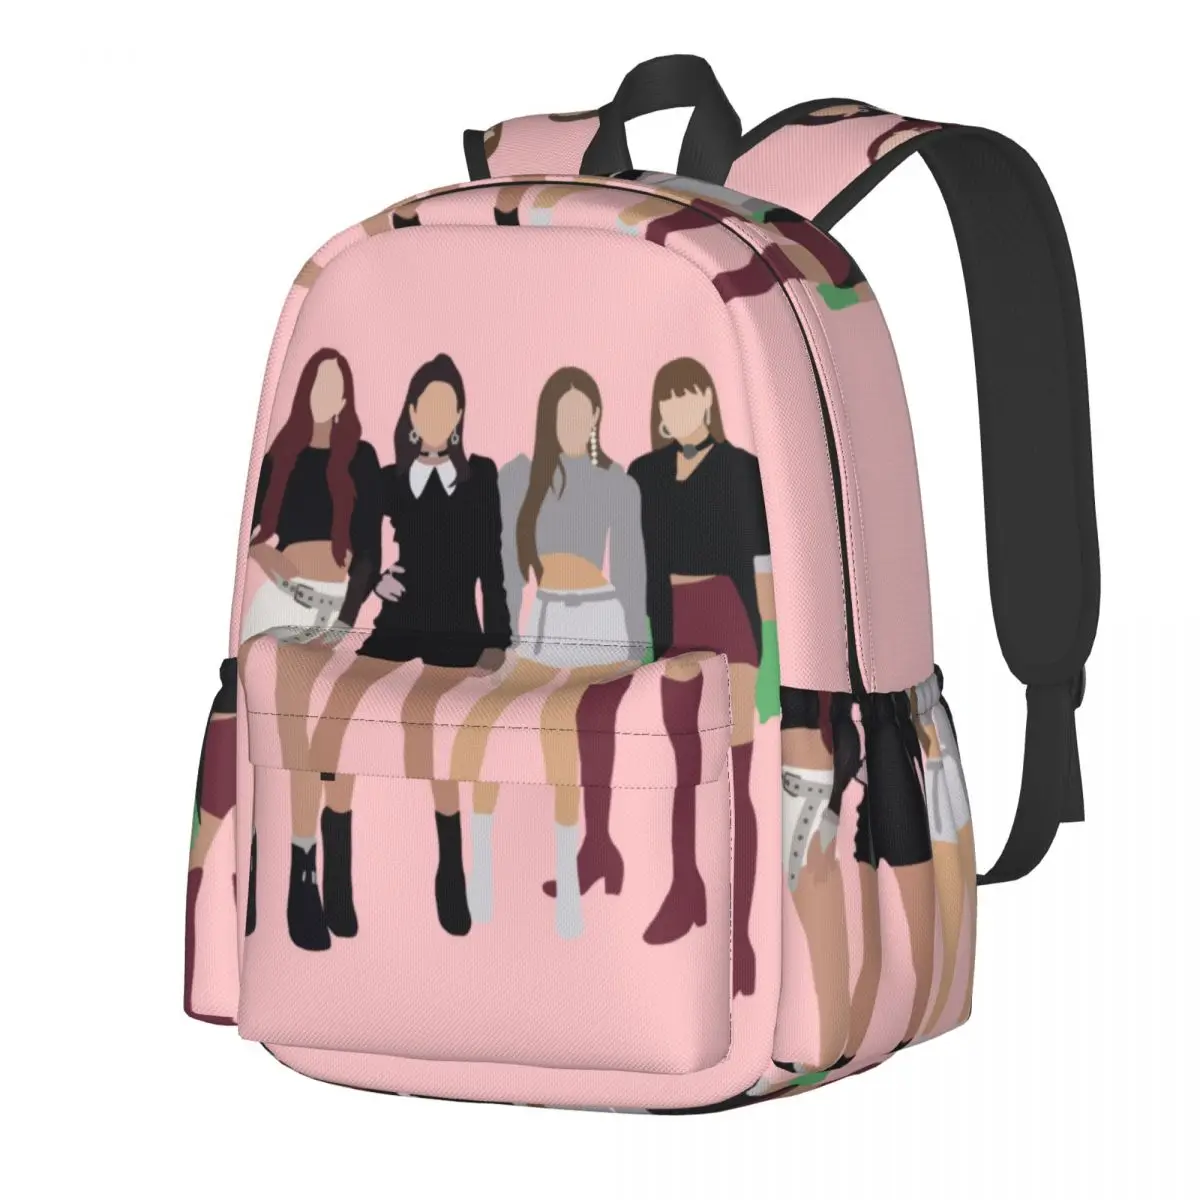 

Kpop группы печатных рюкзак милые девушки досуг рюкзаки студенческие унисекс велоспорт большие школьные сумки дизайн рюкзак